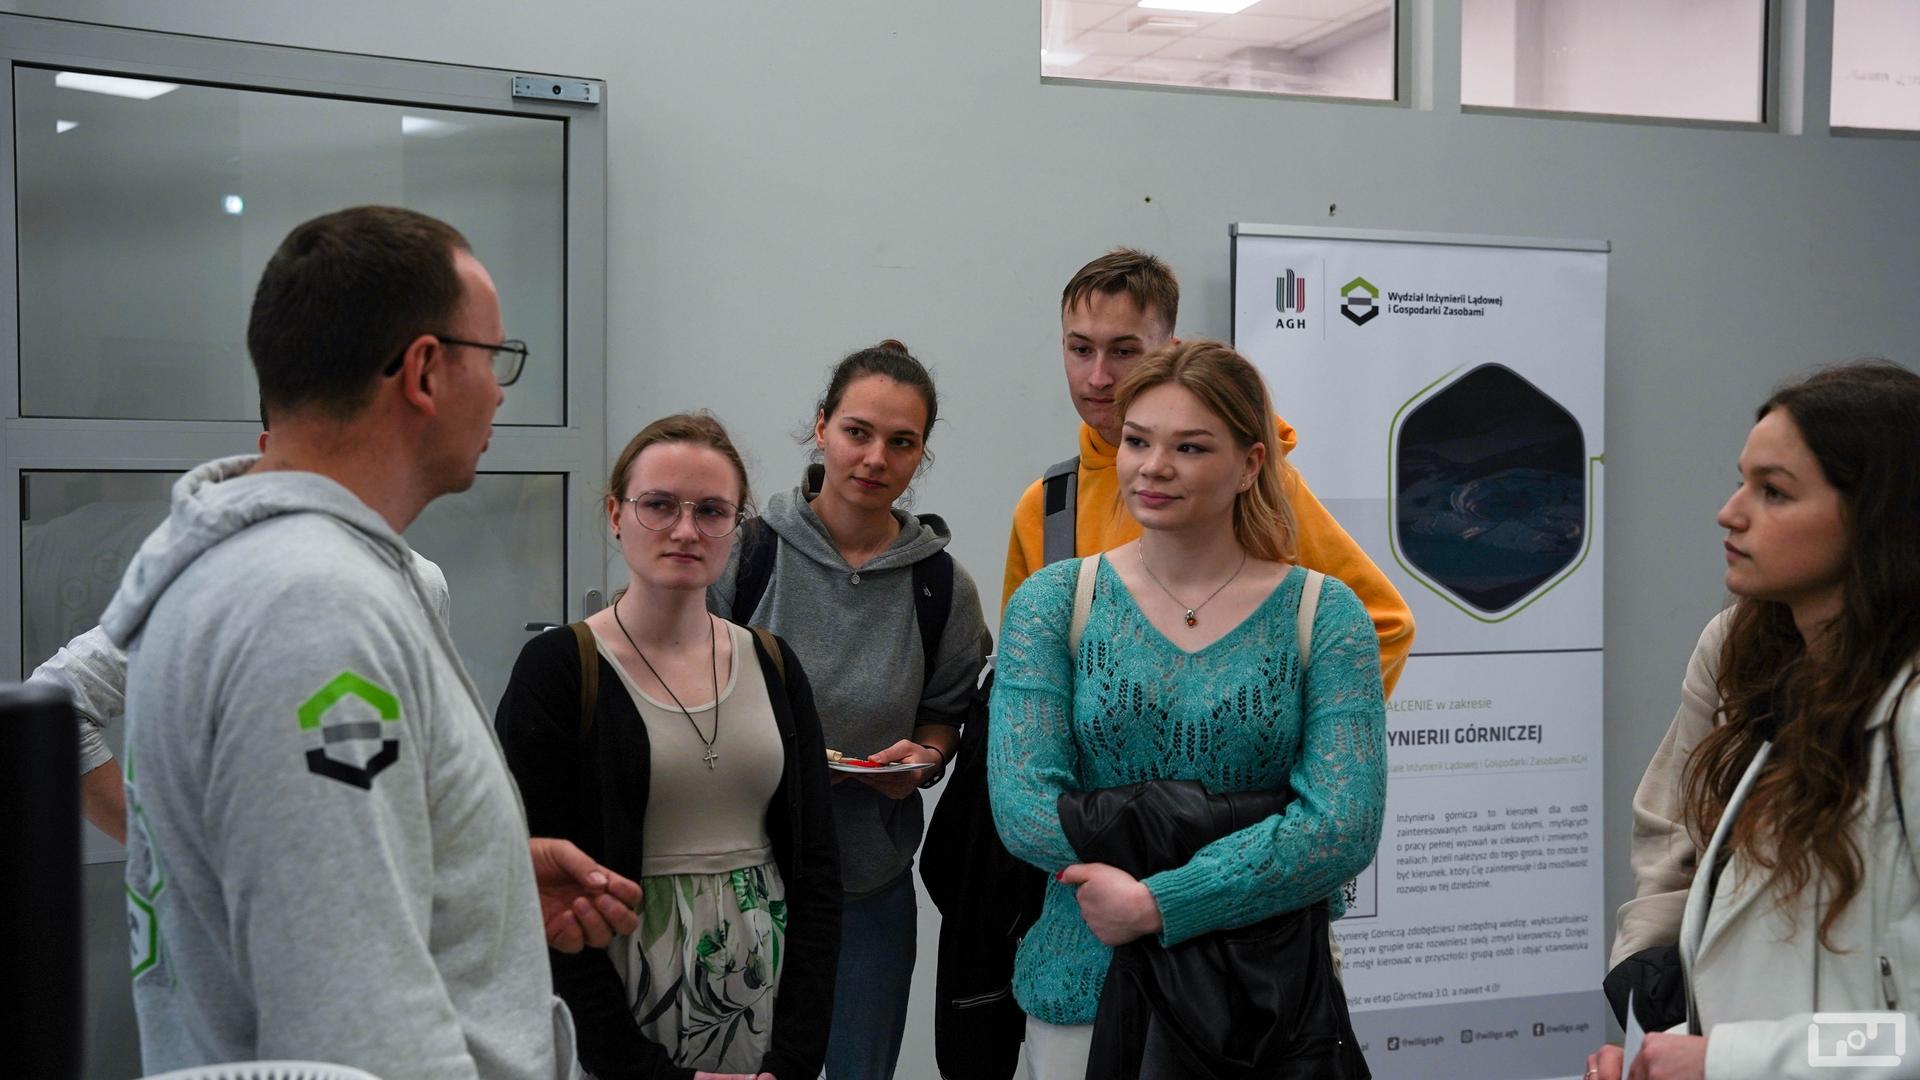 Na zdjęciu widać pracownika wydziału ubranego w szarą bluzę z logiem WILiGZ który rozmawia z młodymi kobietami i mężczyznami. Osoby znajdują się w budynku laboratoryjnym.